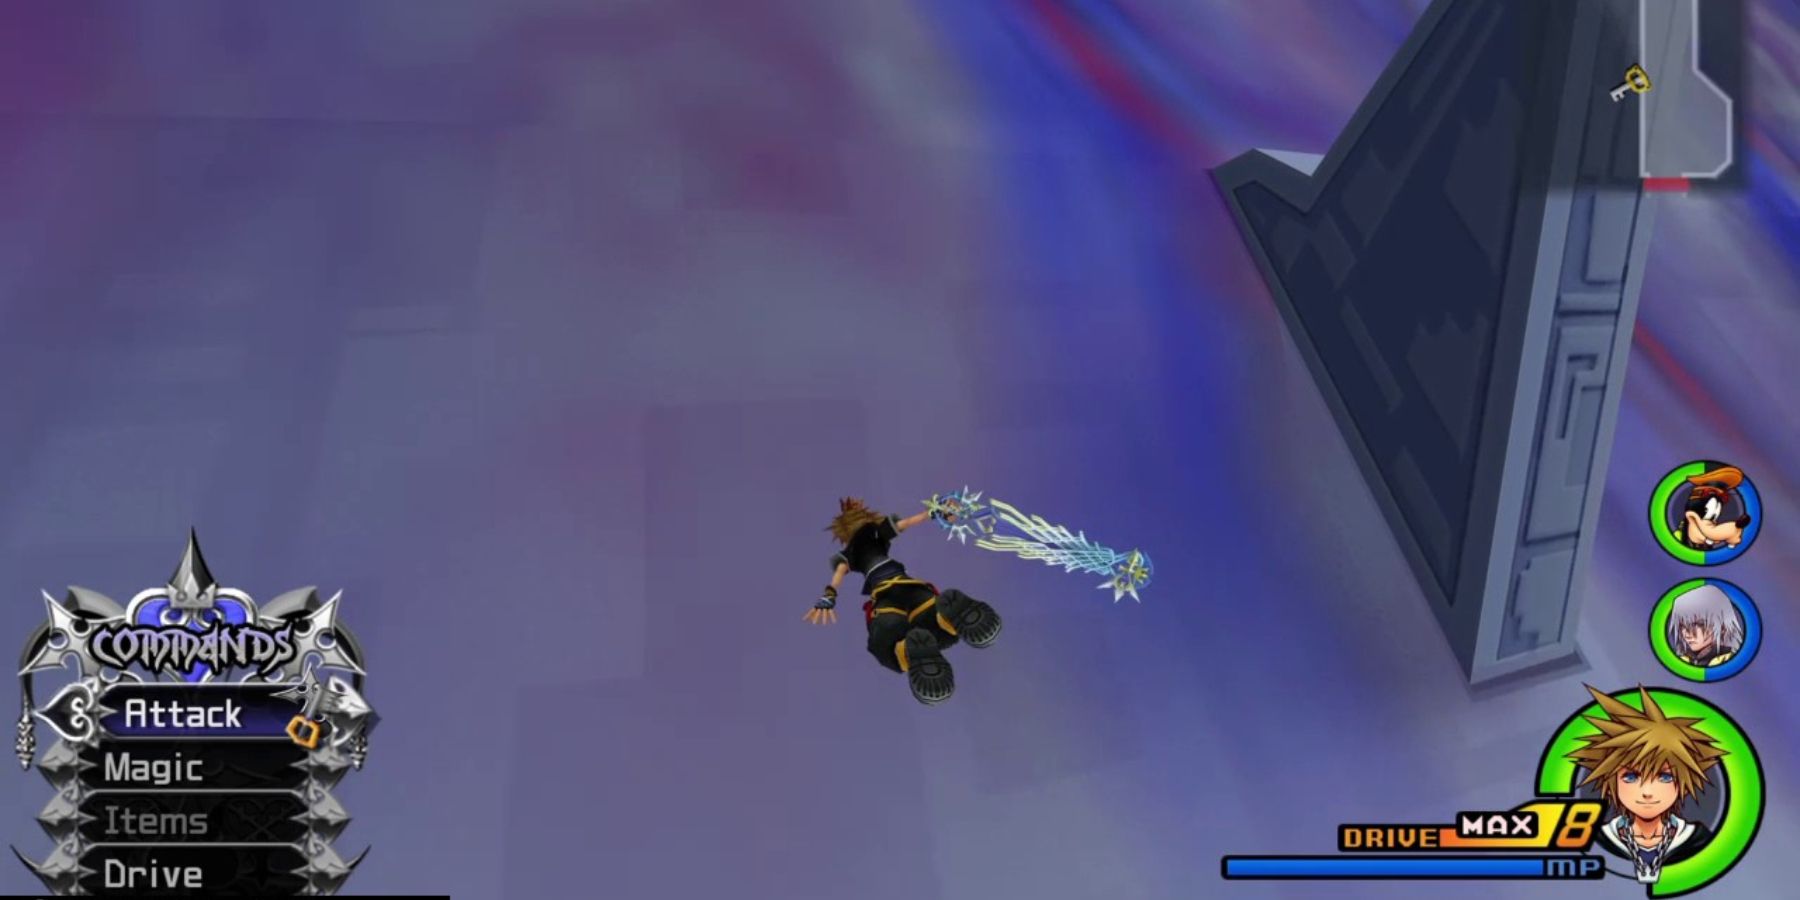 Sora glides in Kingdom Hearts 2